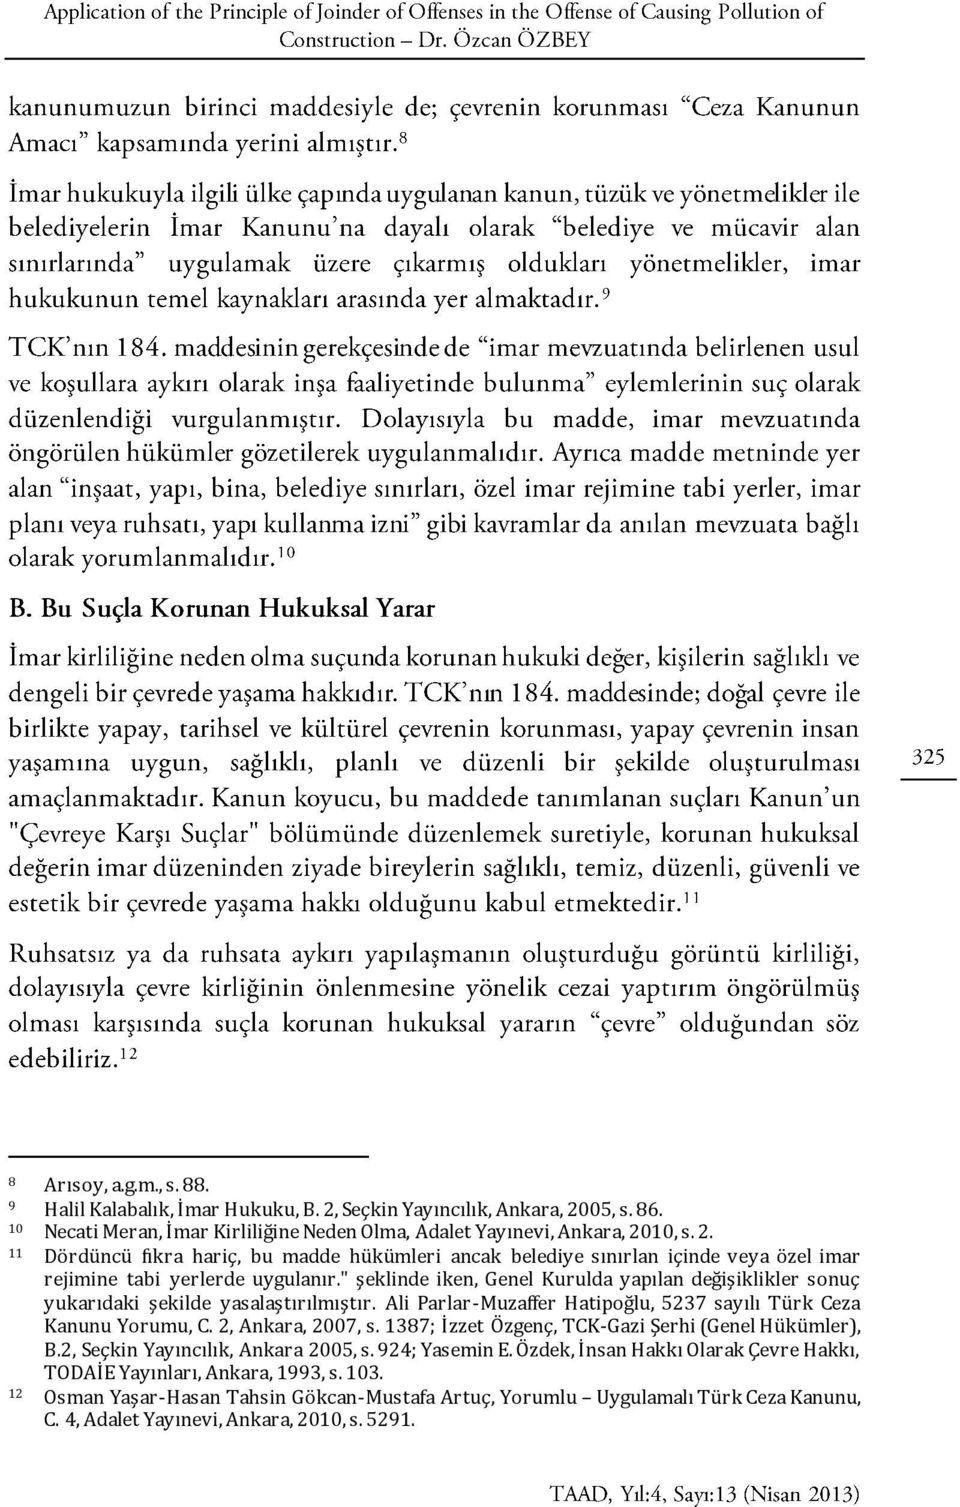 1387; İzzet Özgenç, TCK-Gazi Şerhi (Genel Hükümler), B.2, Seçkin Yayıncılık, Ankara 2005, s. 924; Yasemin E. Özdek, İnsan Hakkı Olarak Çevre Hakkı, TODAİE Yayınları, Ankara, 1993, s. 103.